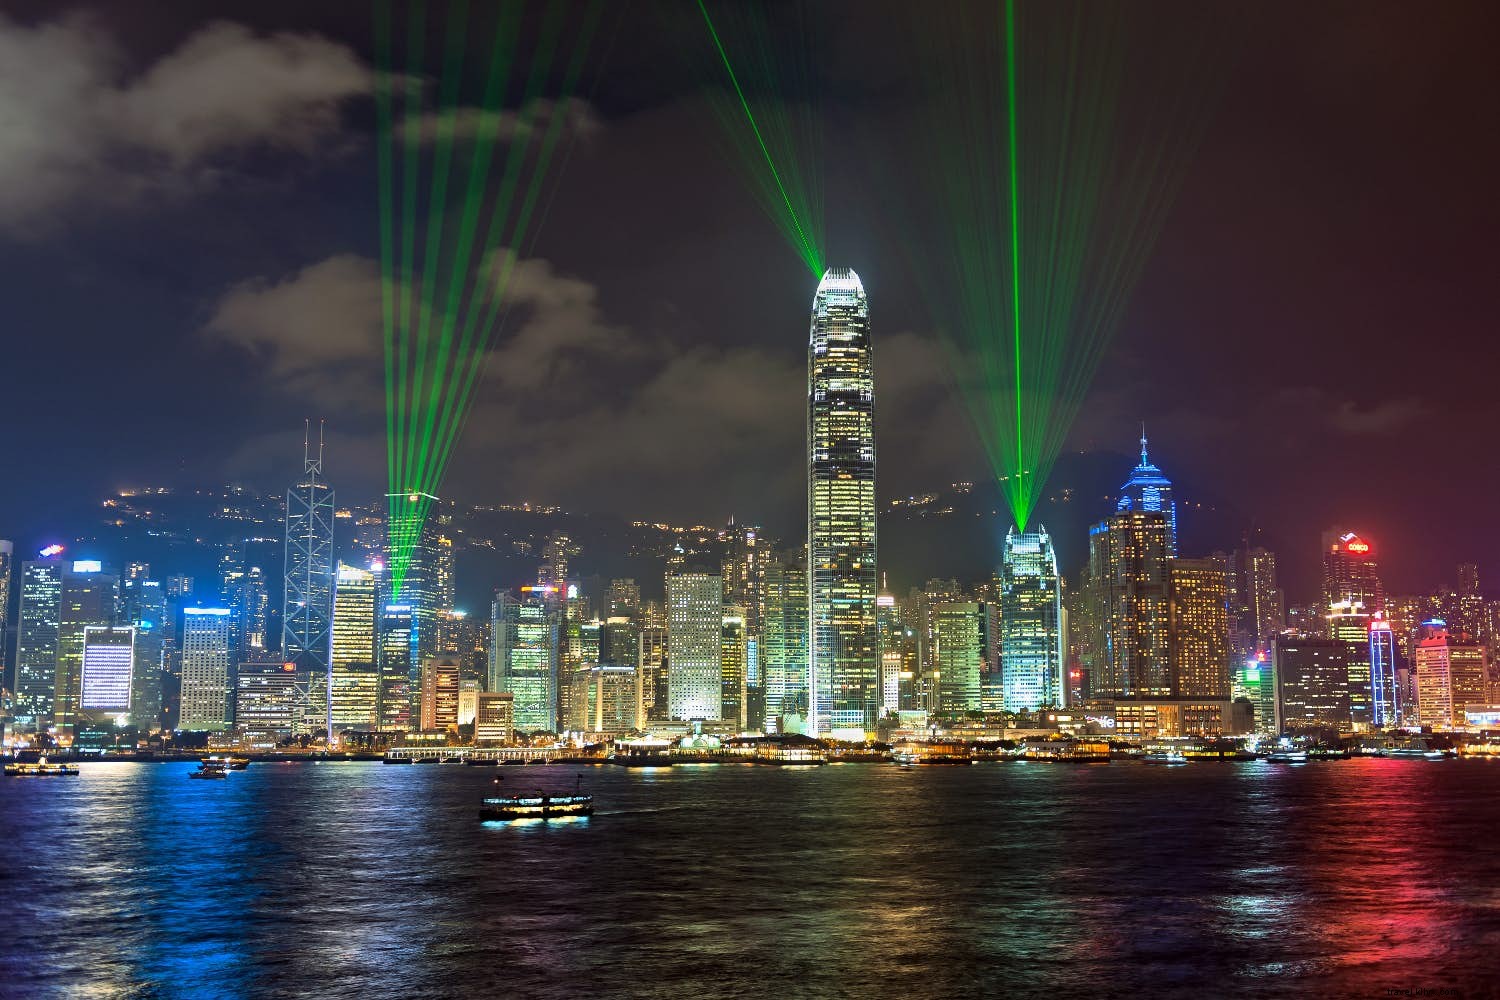 Il lato oscuro di Kowloon:la Hong Kong peninsulare di notte 